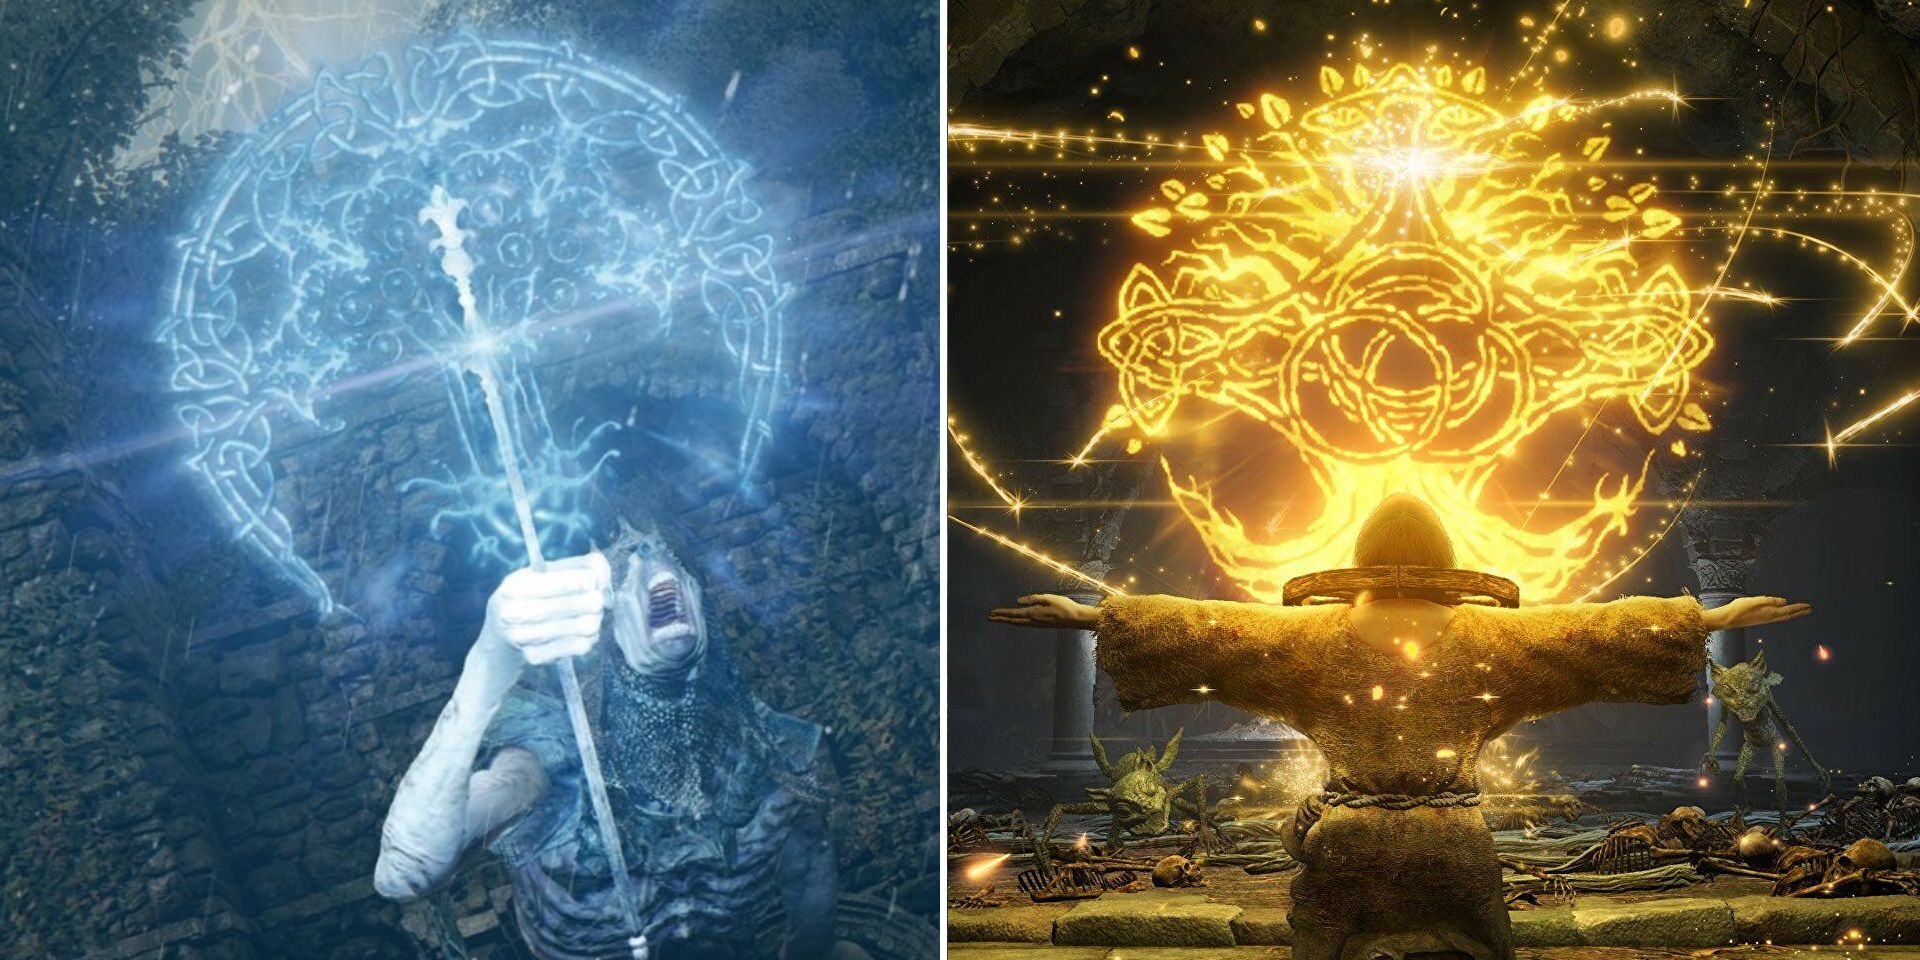 Uma imagem dividida mostrando dois tipos diferentes de magia em Elden Ring, o Glintstone Sorcery azul à esquerda e as luzes douradas dos Encantamentos à direita.